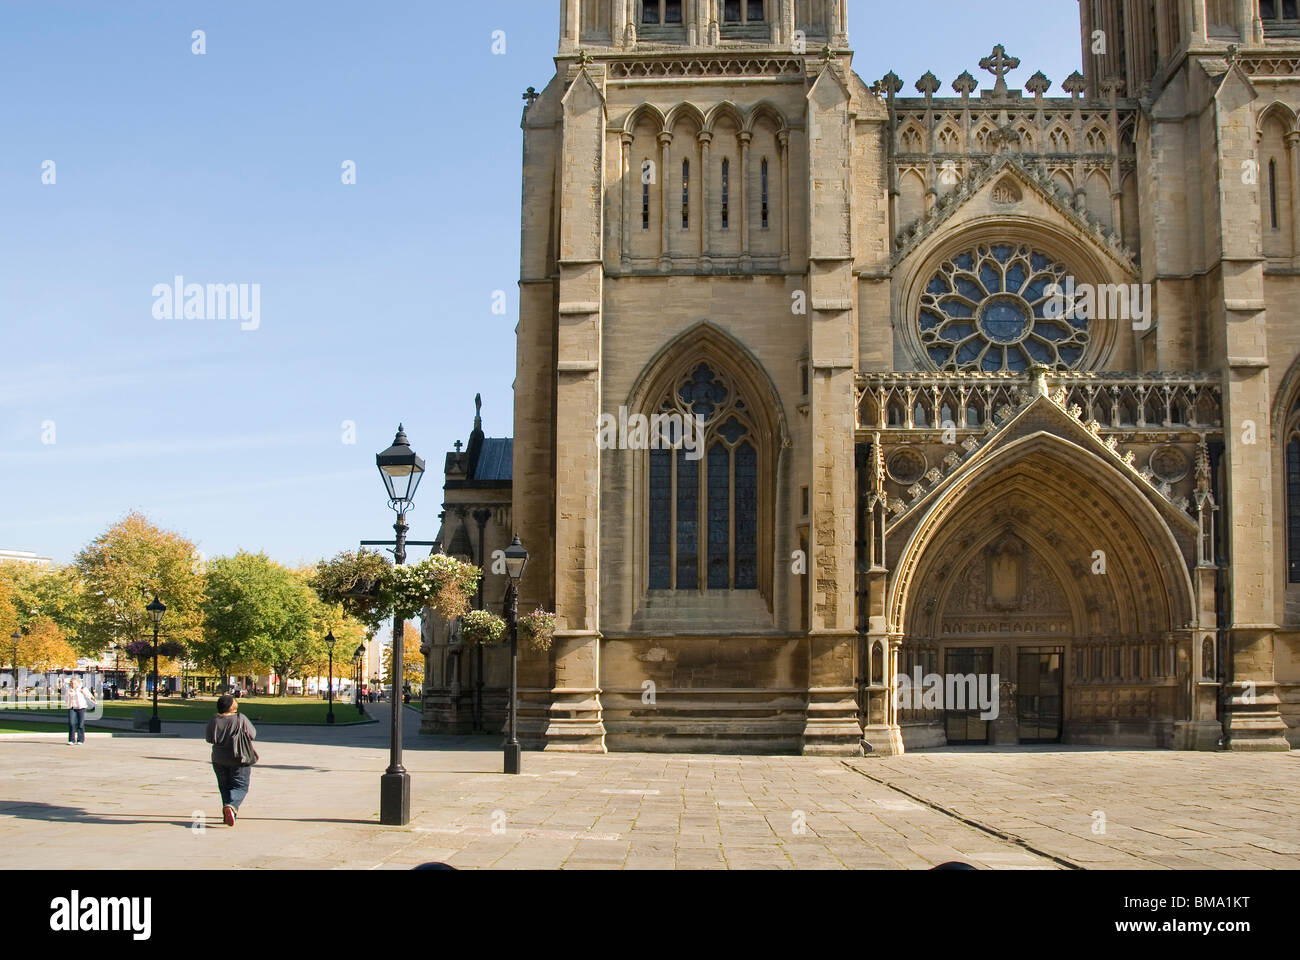 La cathédrale de Bristol, college green, Bristol, UK Banque D'Images